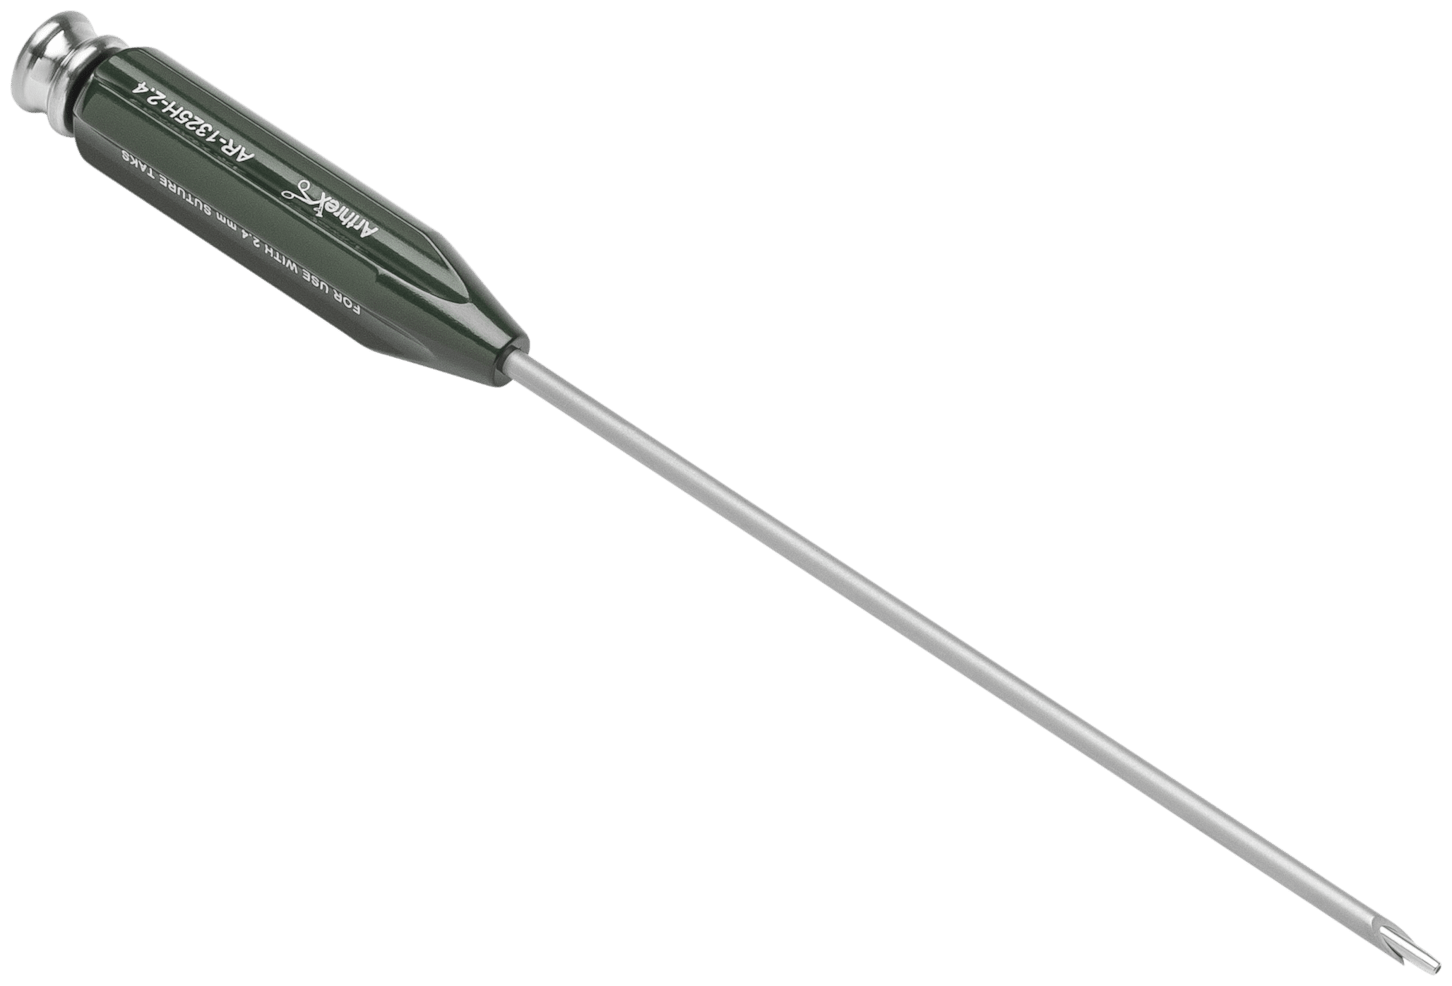 Zielinstrument, für 2.4 mm Hüftanker, mit Gabelspitze, mit kanüliertem Obturator mit abgerundeter Spitze